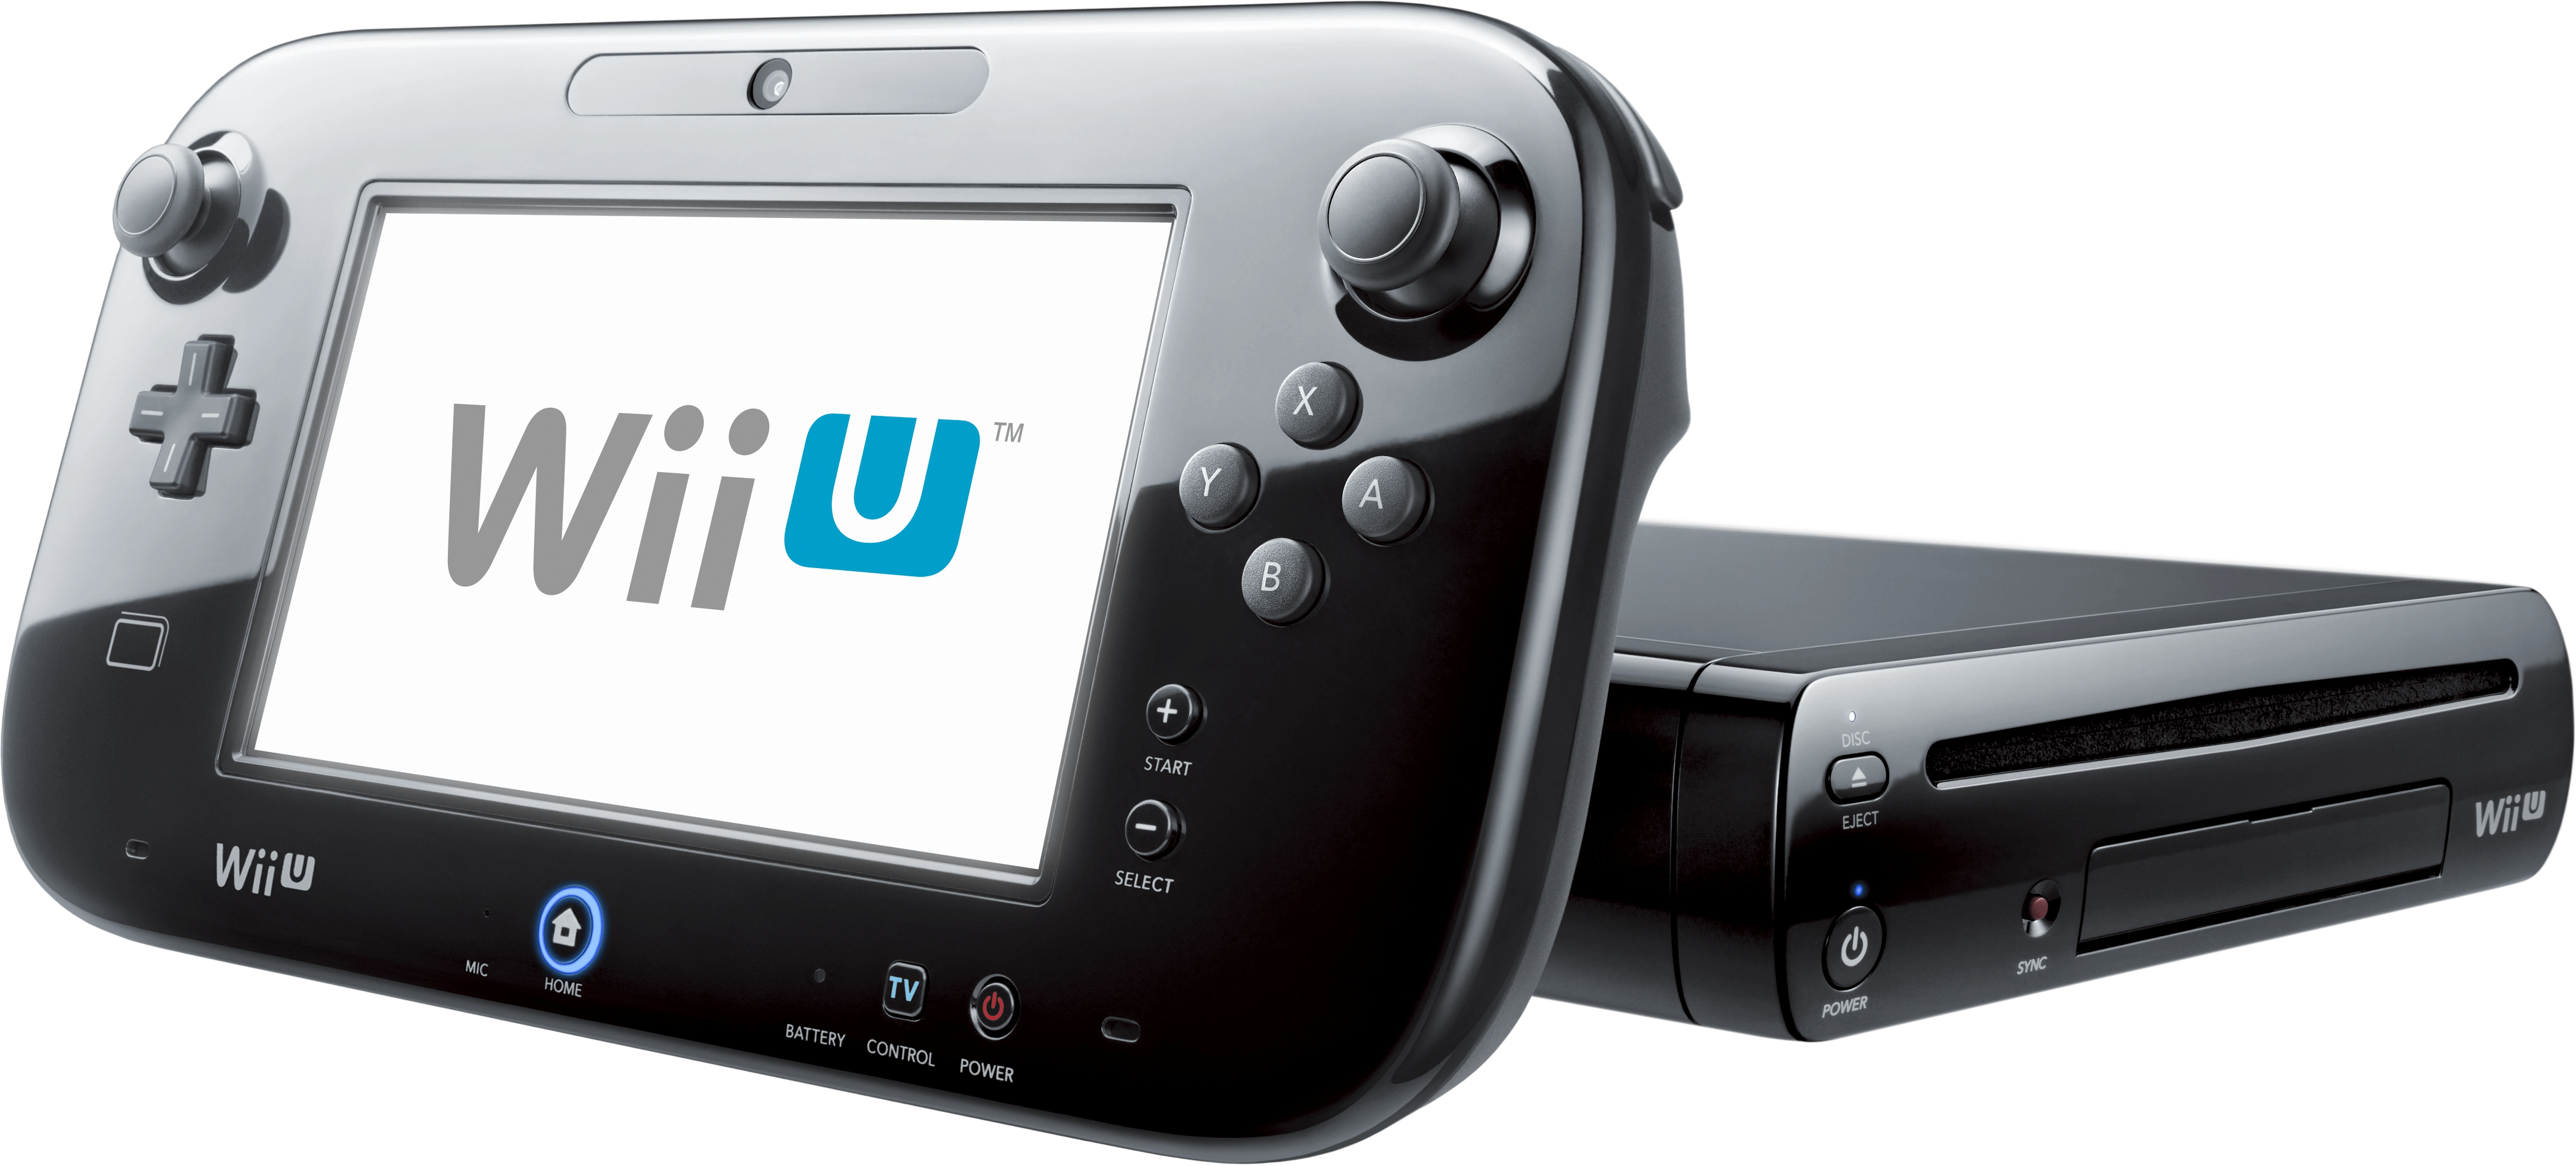 Wii U Pro Controller - Wikipedia